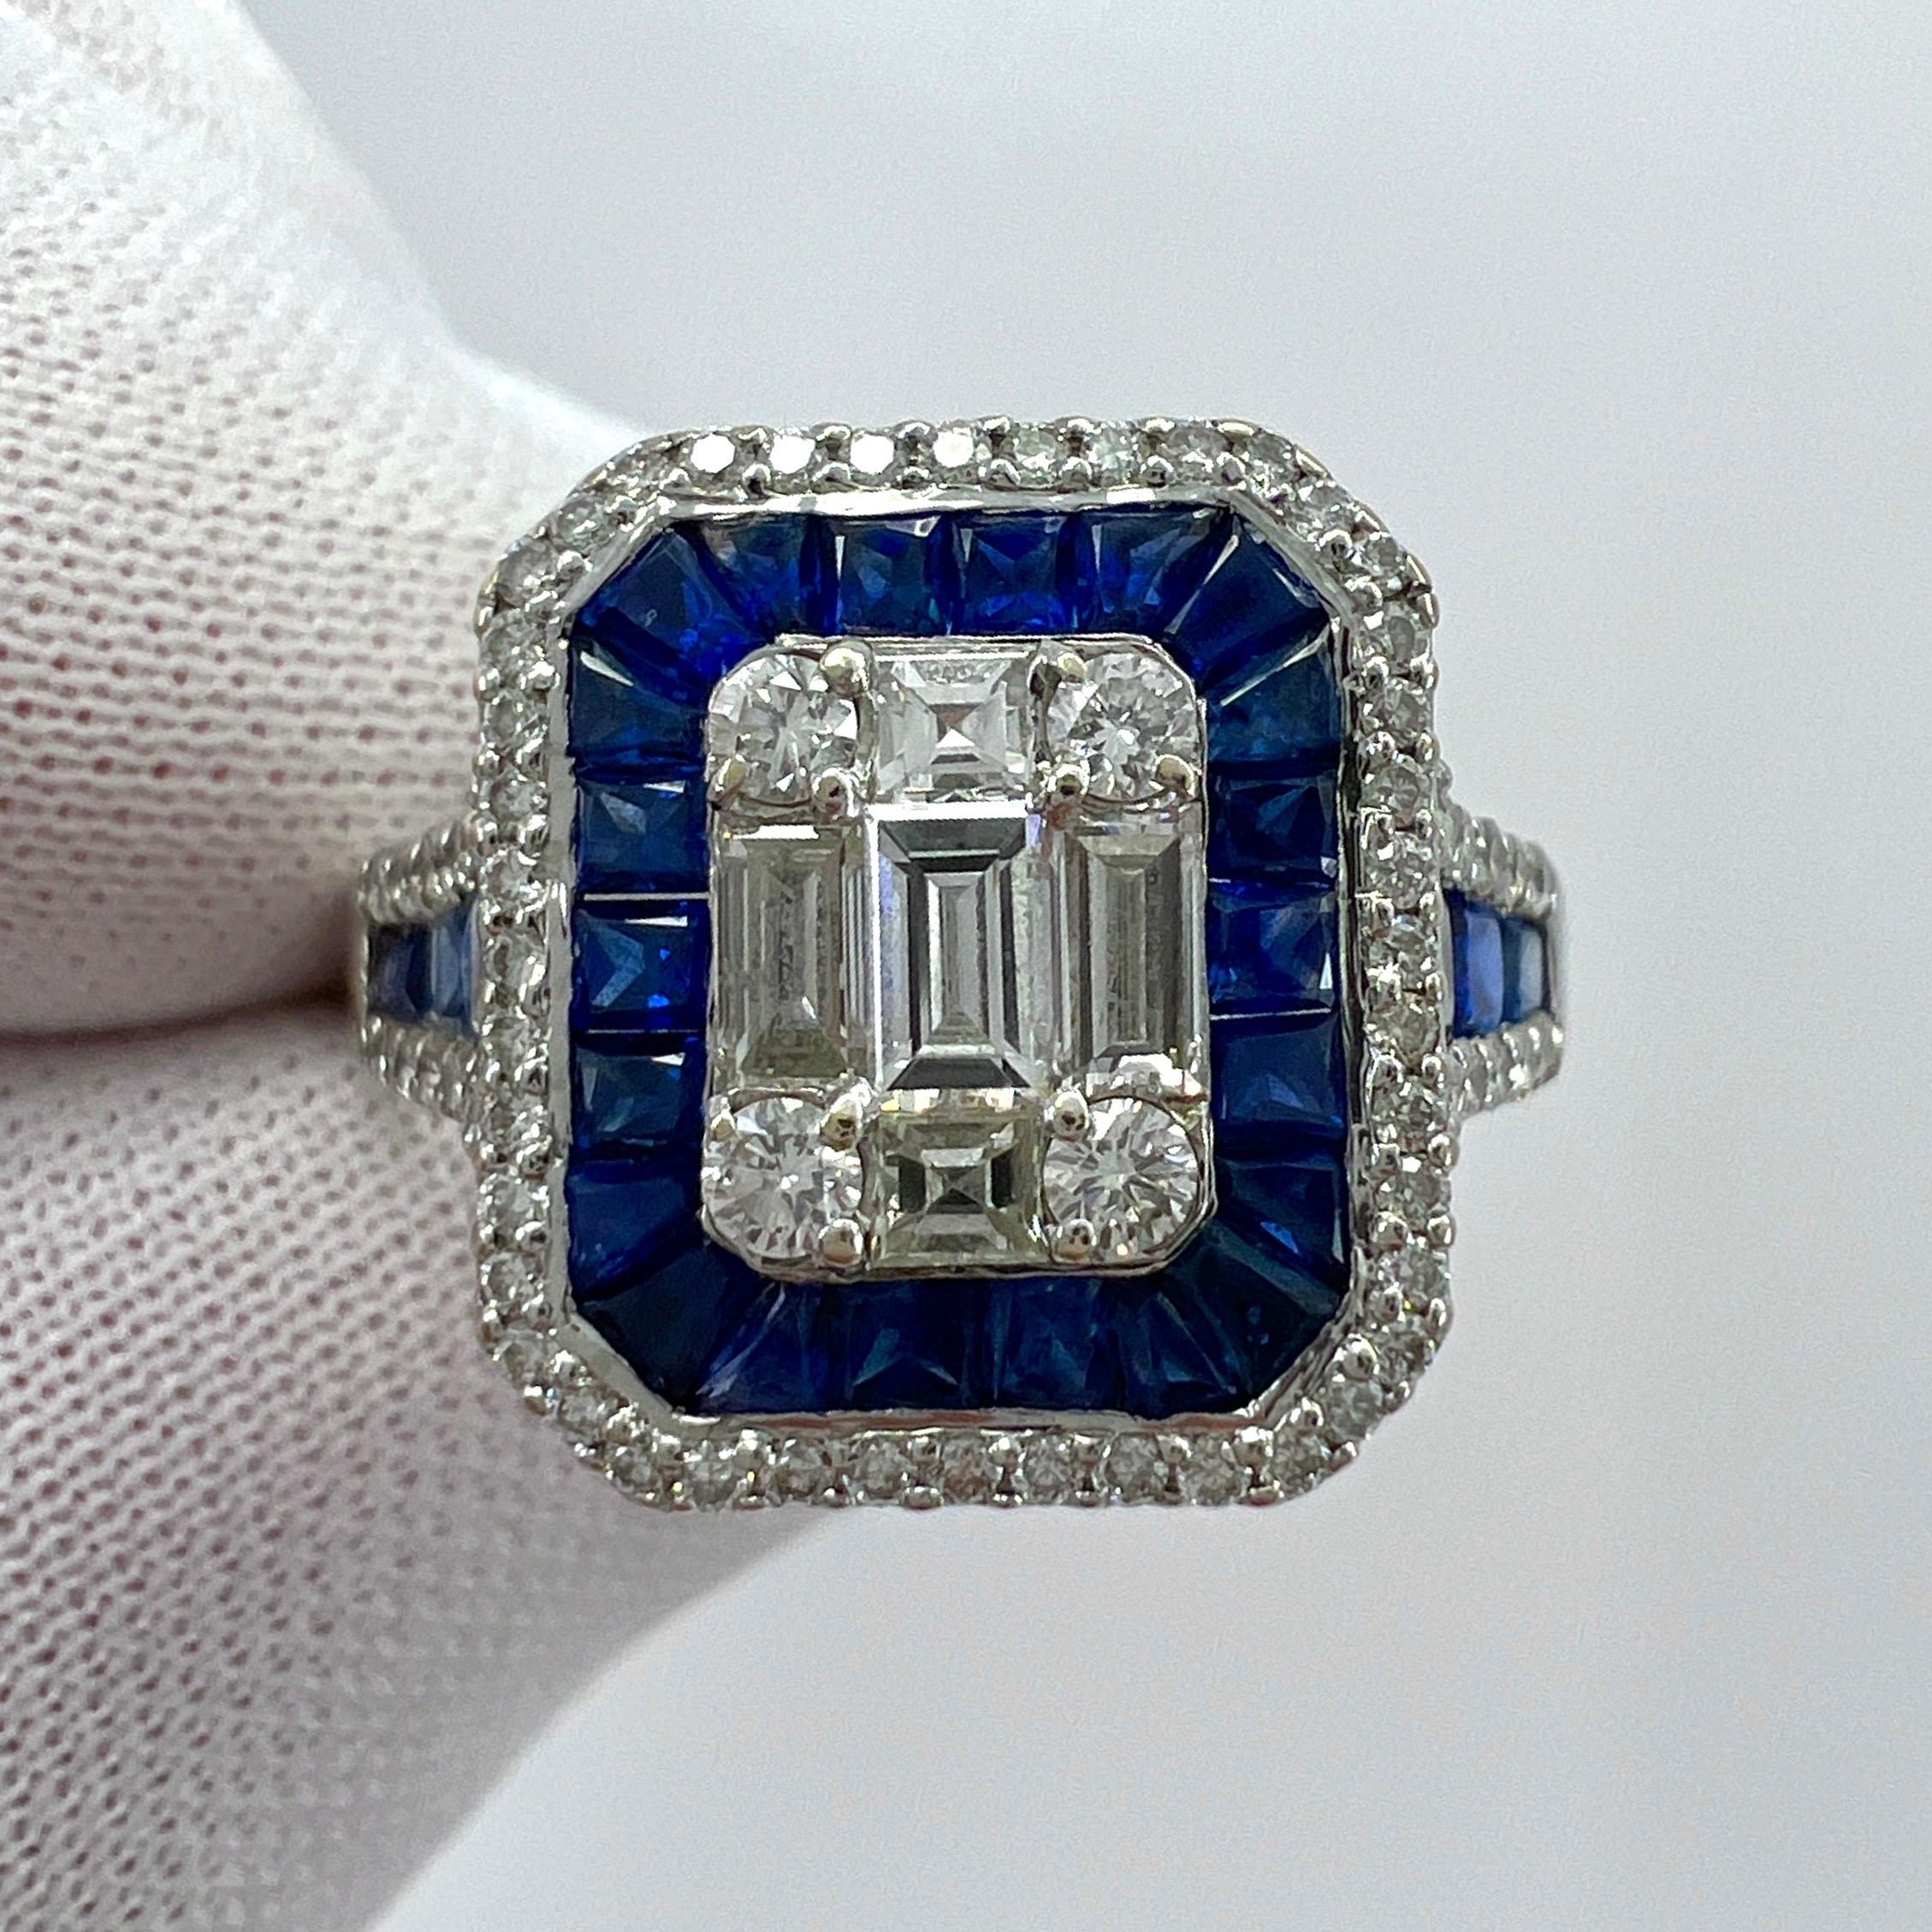 2 Carat Blue Sapphire Diamond Calibre Cut 18k White Gold Art Deco Cocktail Ring For Sale 1